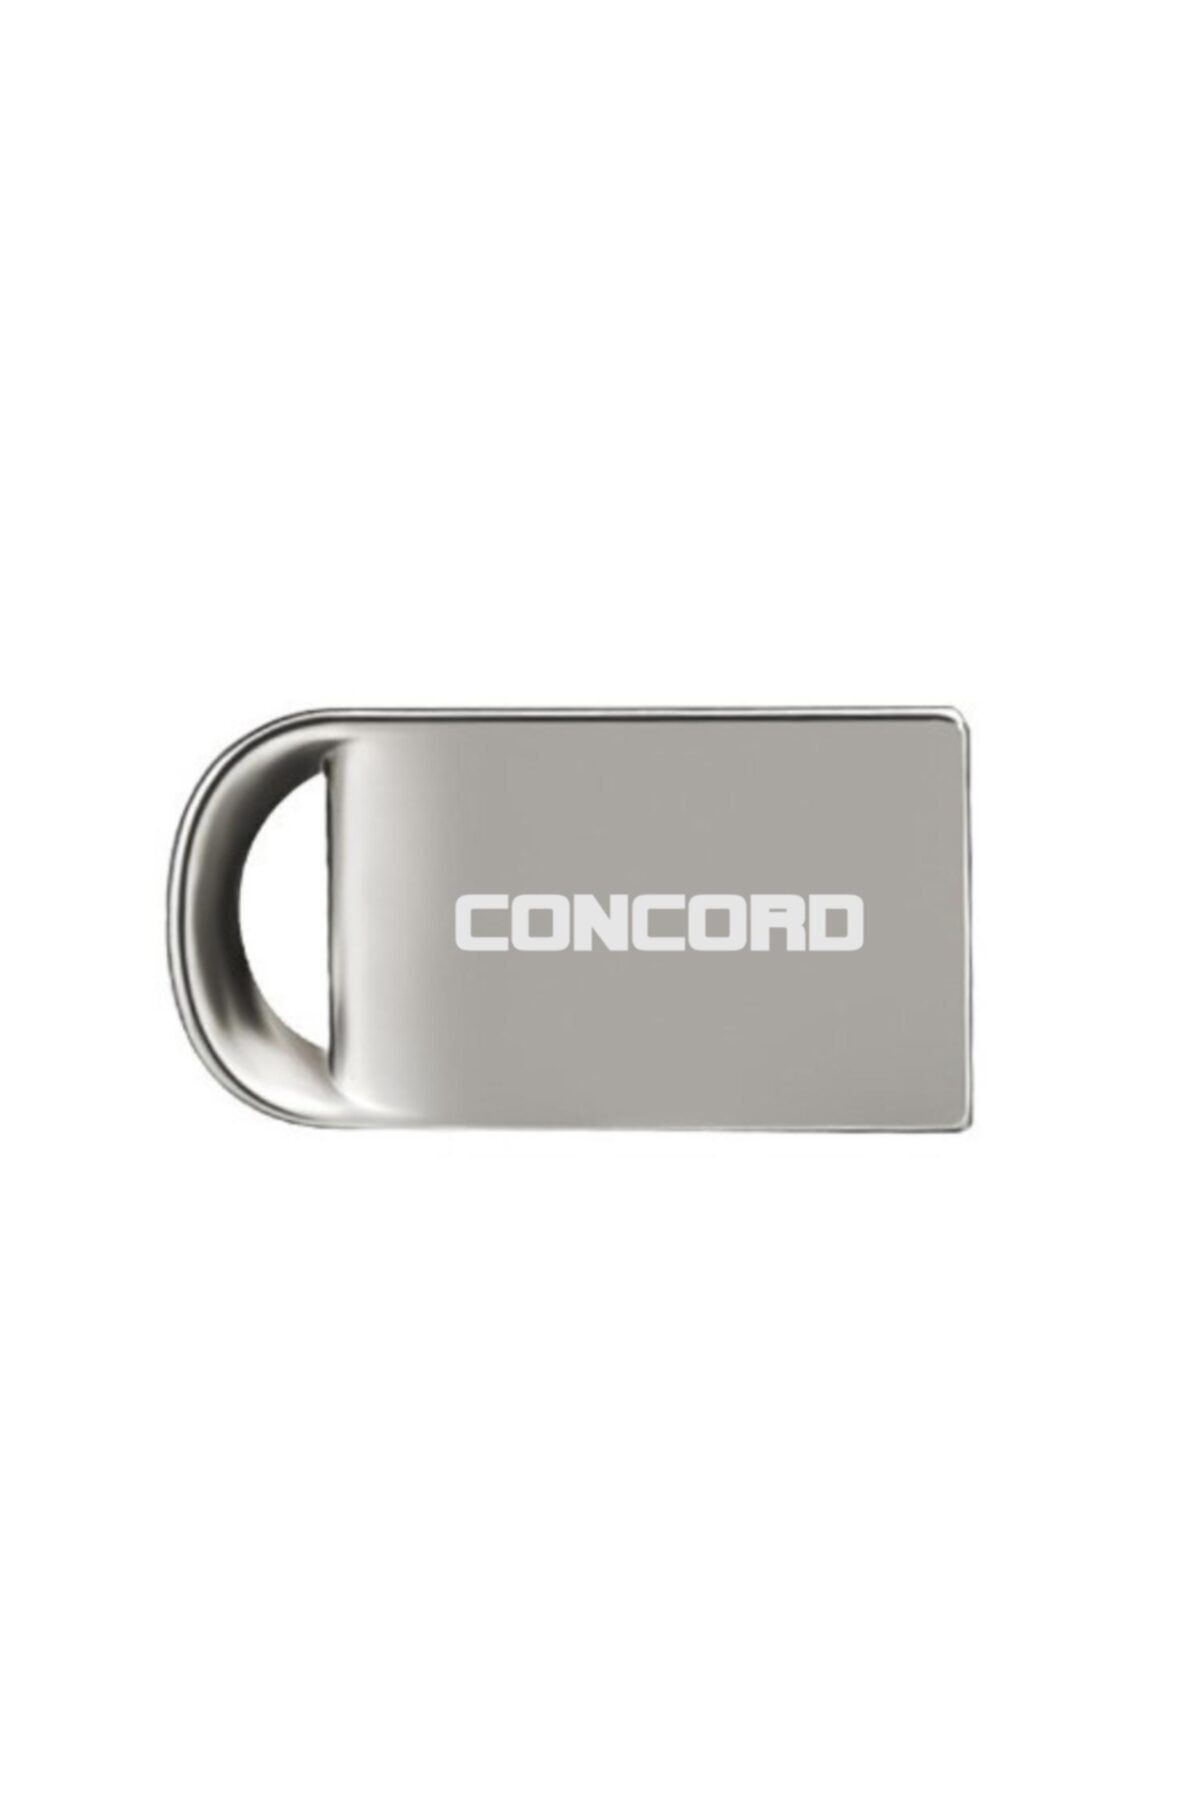 Concord 32gb 3,0 Mini Metal Usb Flash Bellek C-3u32